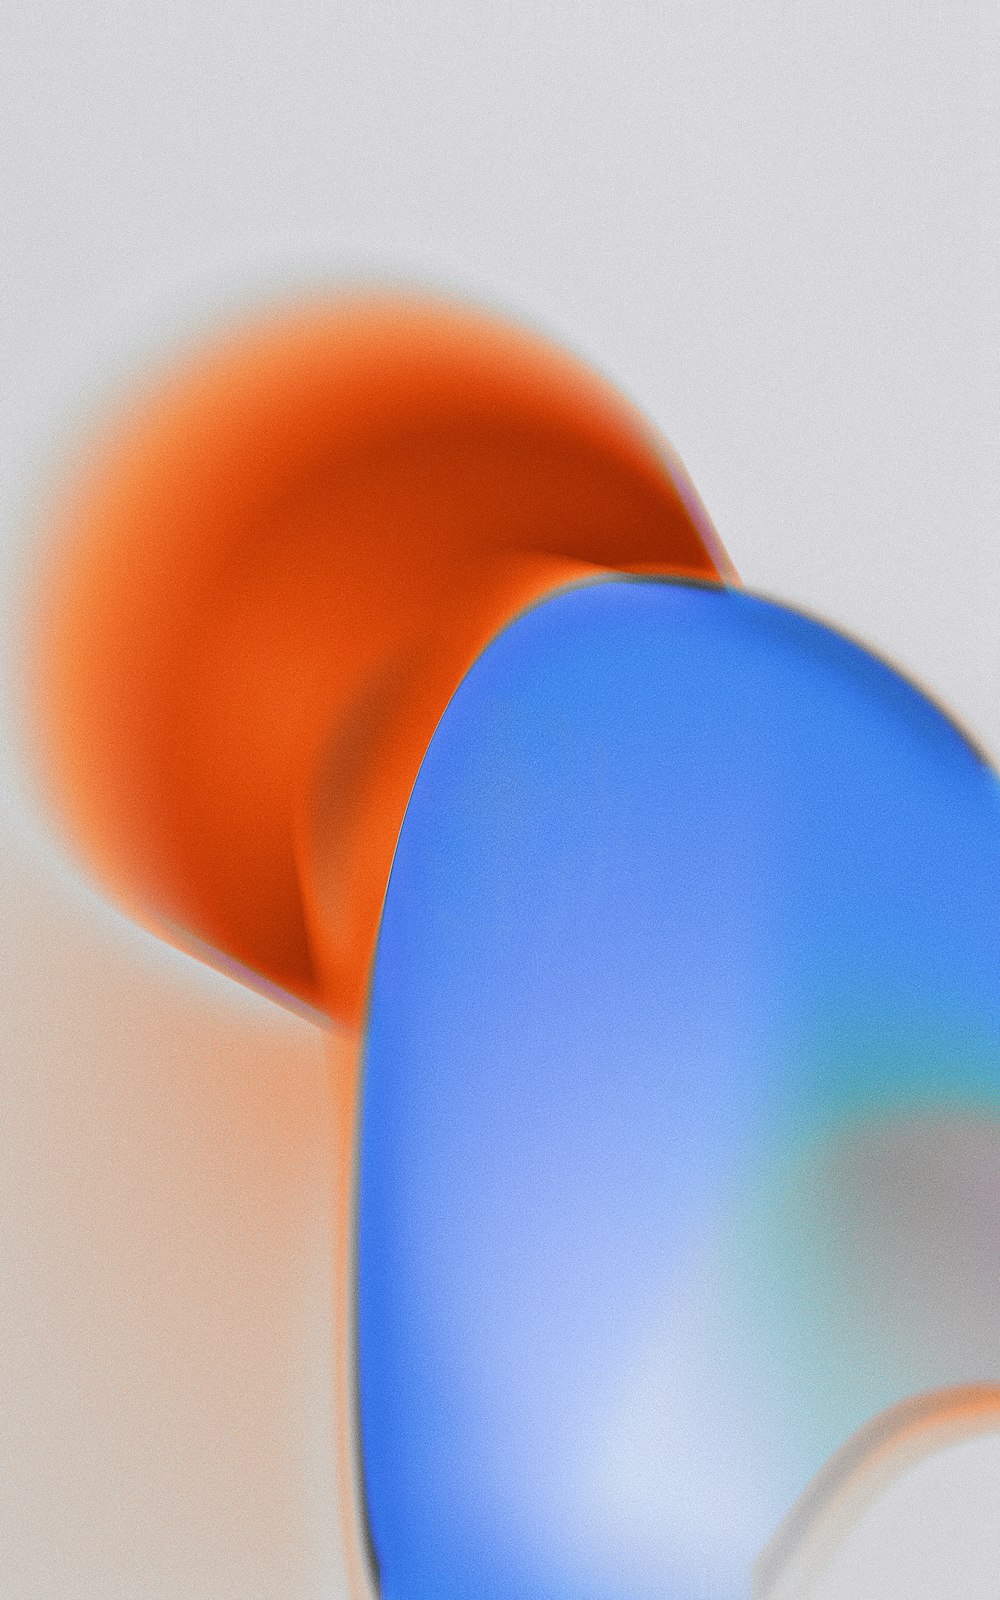 a close-up of a blue ball